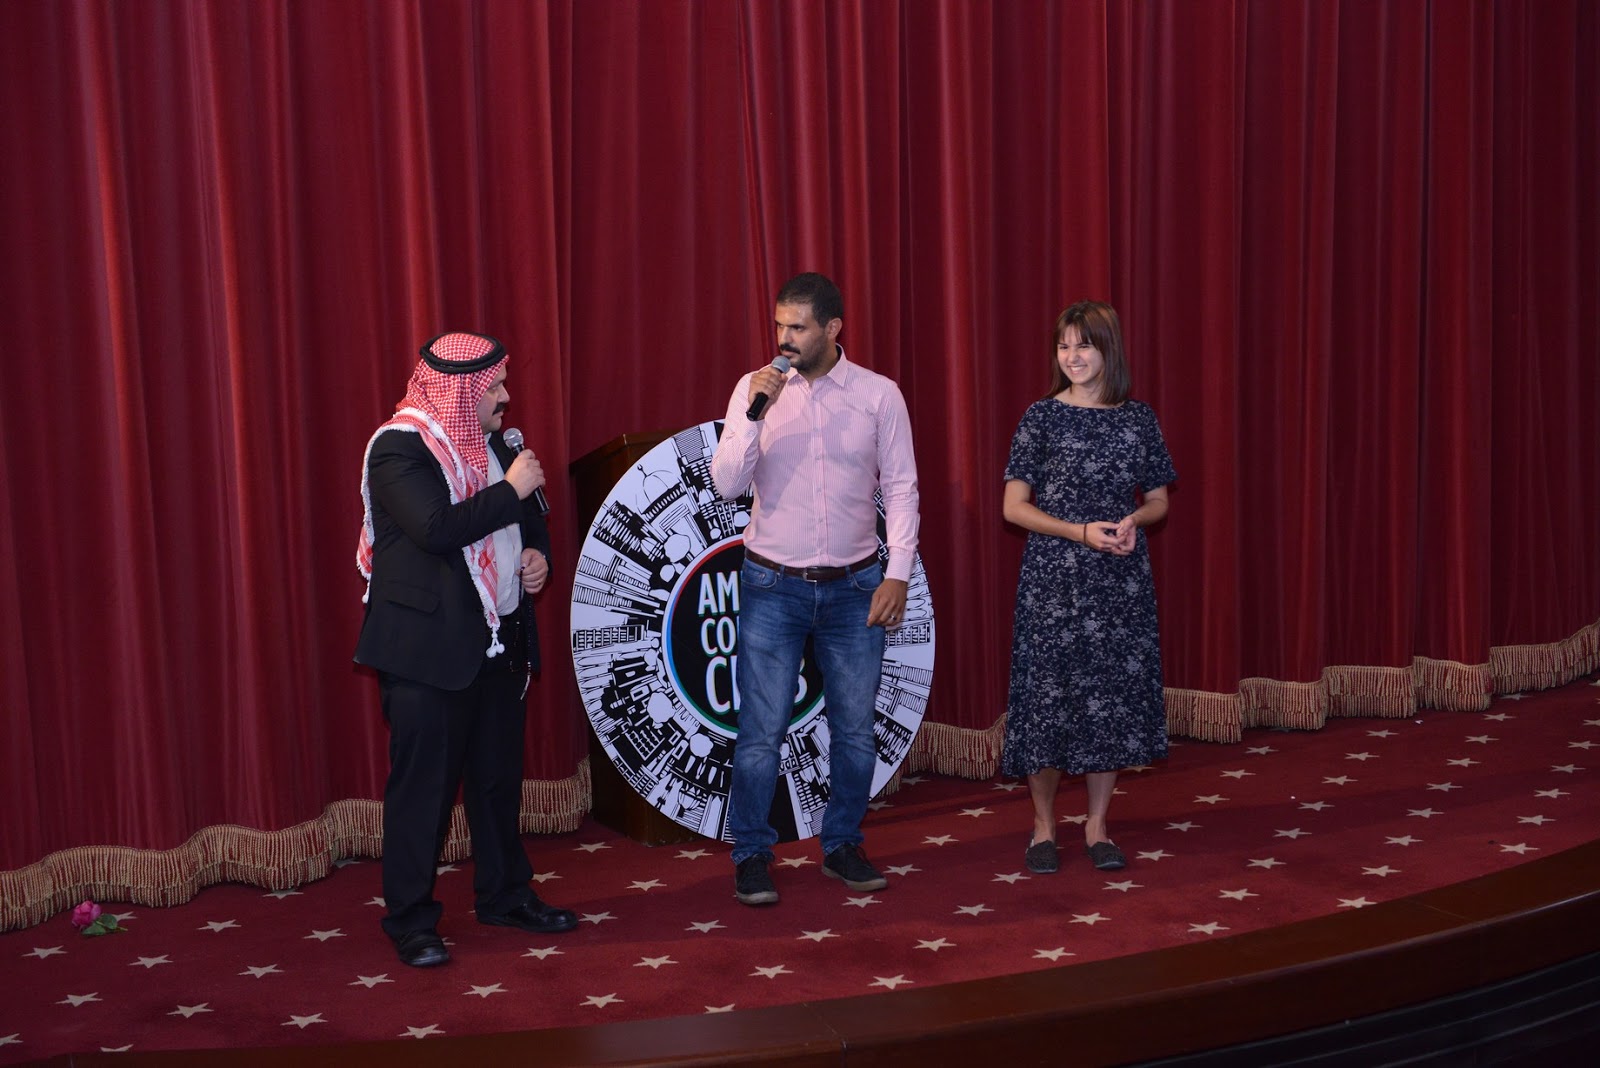 يسر نادي عمان للكوميديا دعوتكم لحضور عرض كوميدي جديد لمجموعة من نجوم نادي عمان للكوميديا.